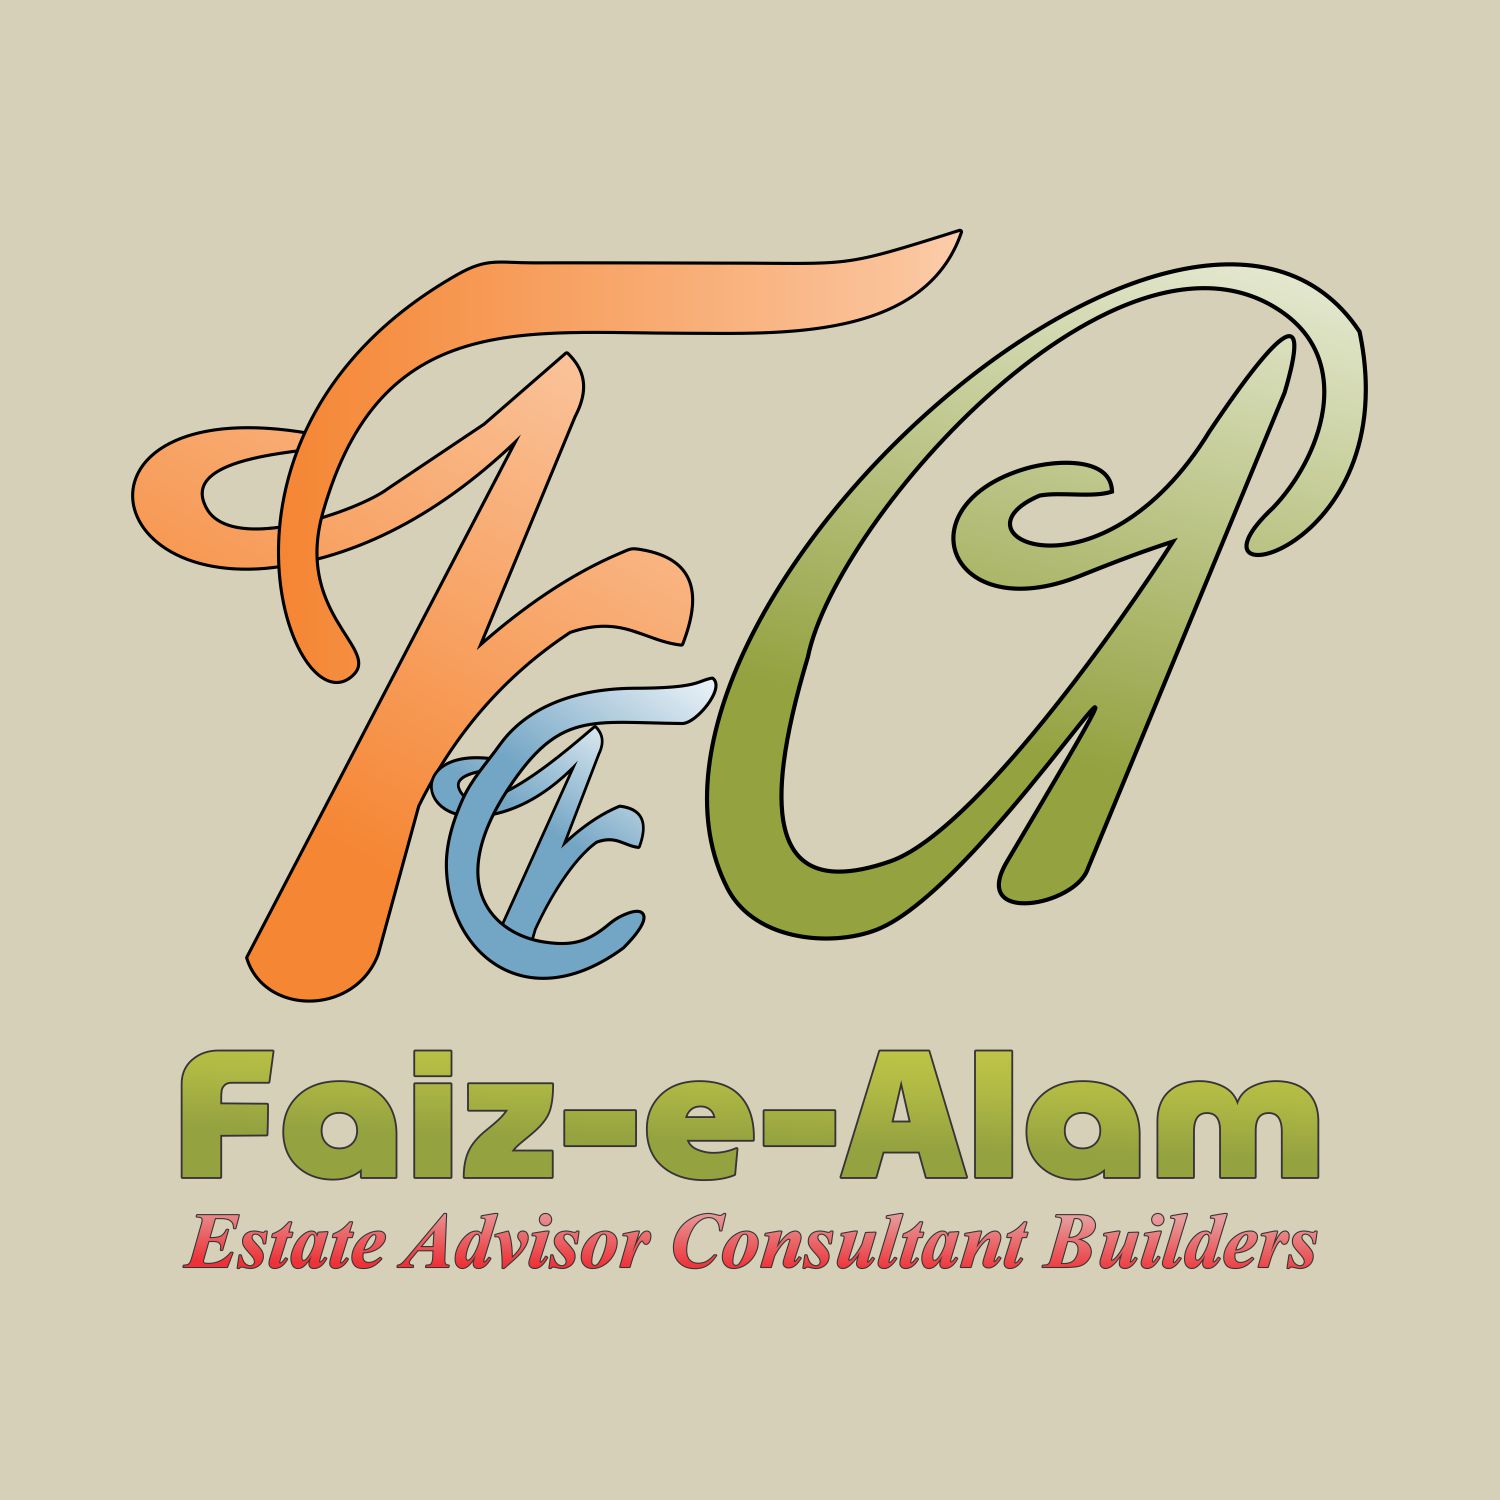 Faiz-e-Alam Estate Advisor & Consultant 